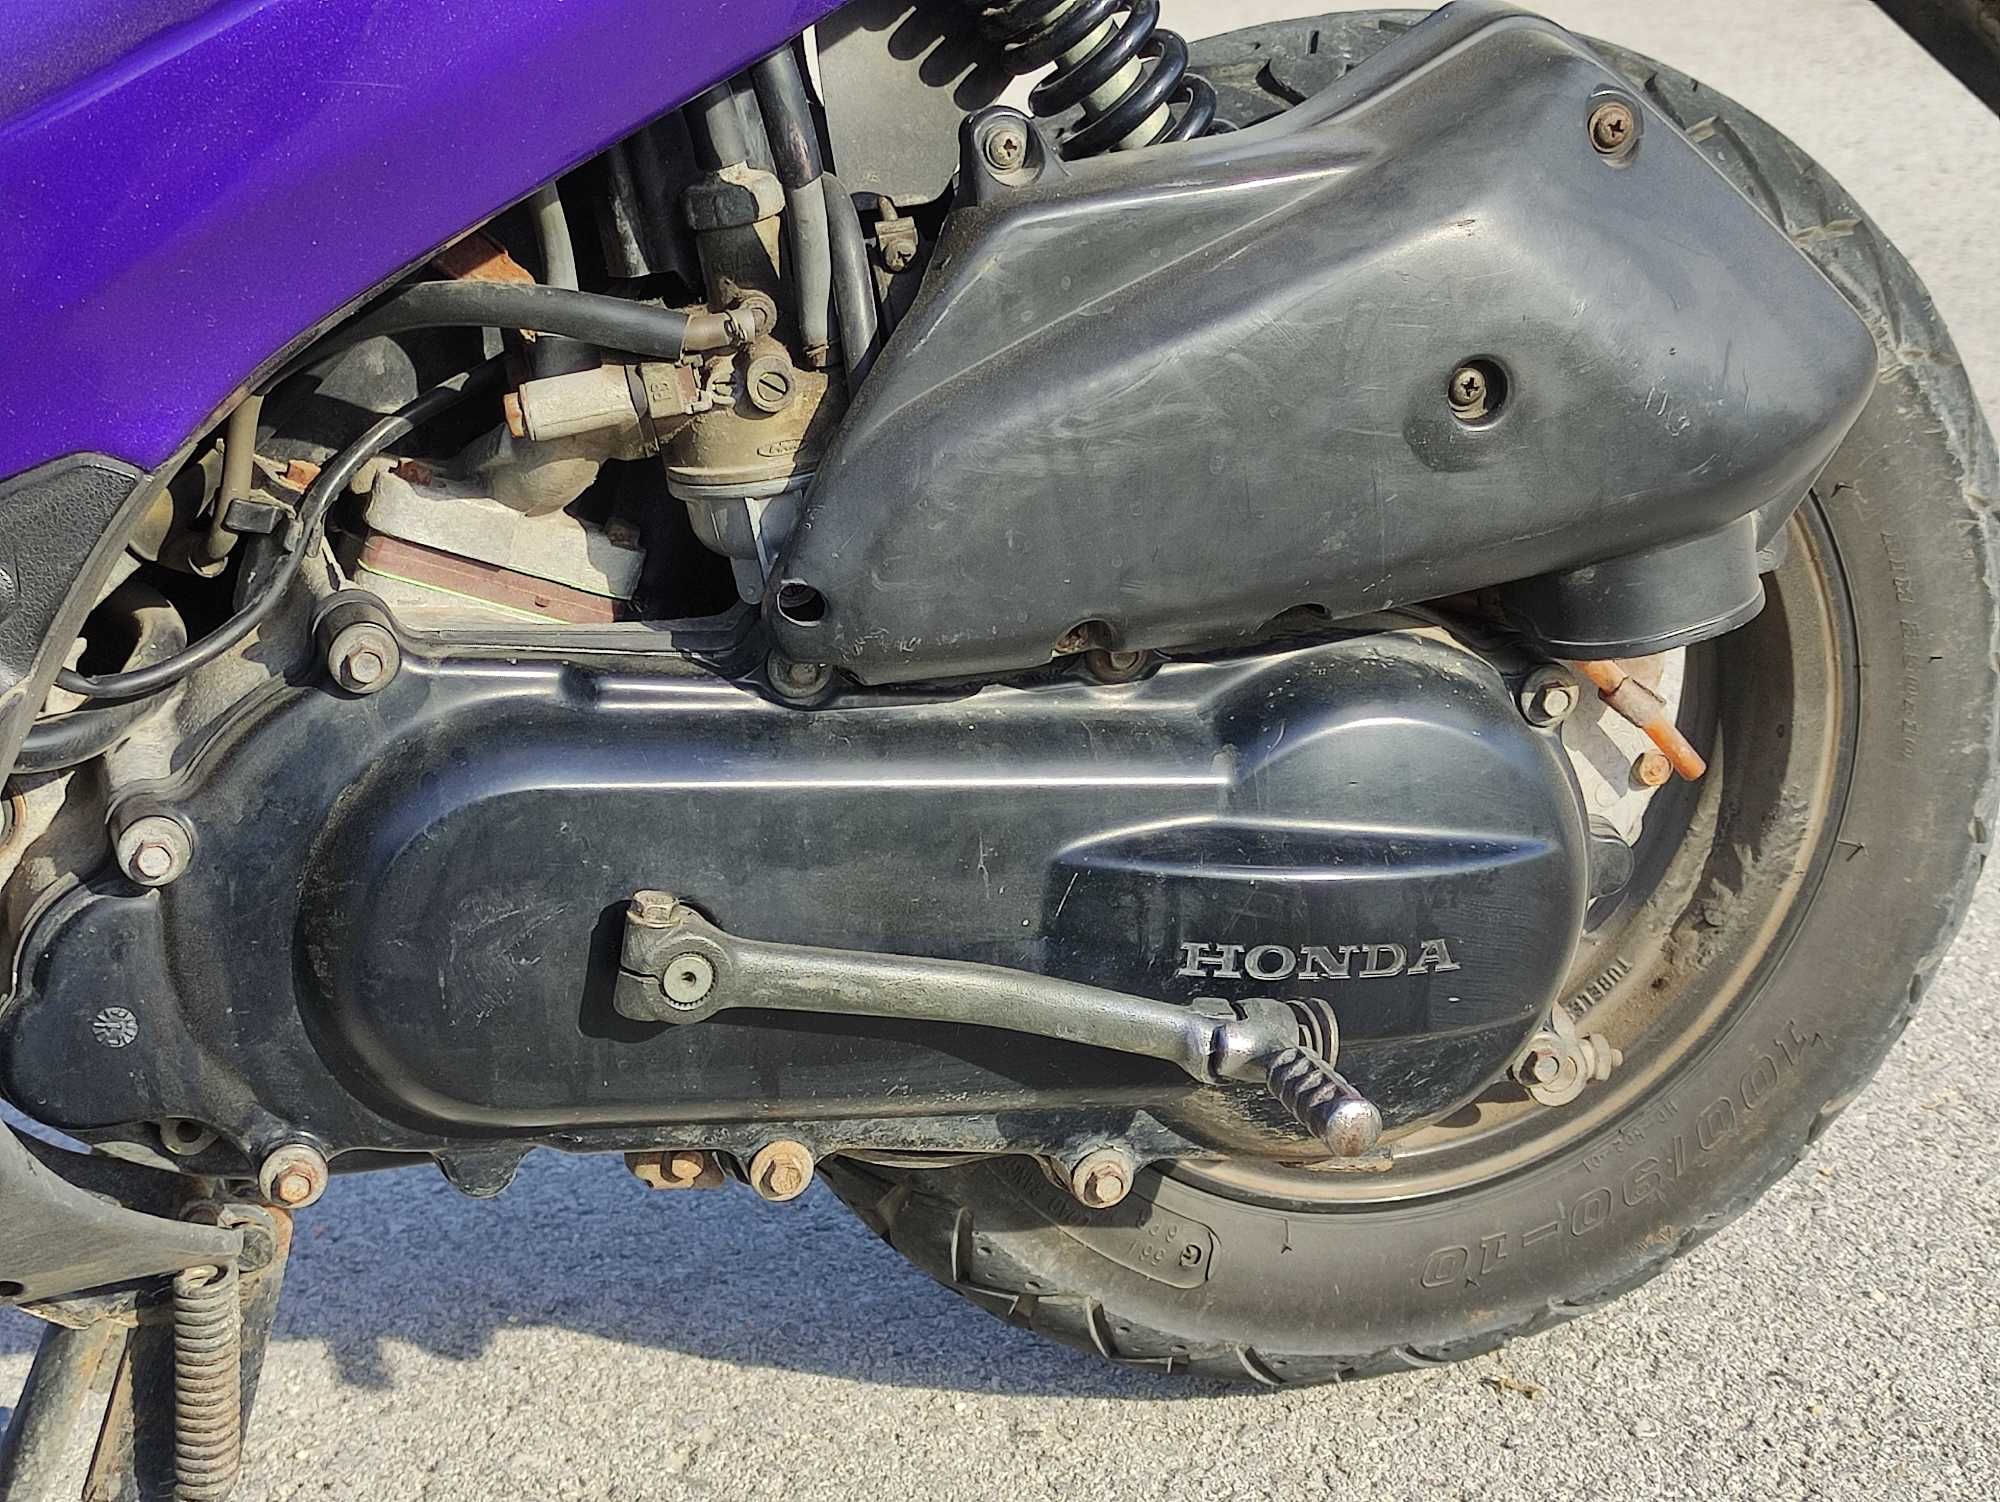 Skuter Honda Sfx 50 motorower sprawny z papierami oc przegląd aktualne